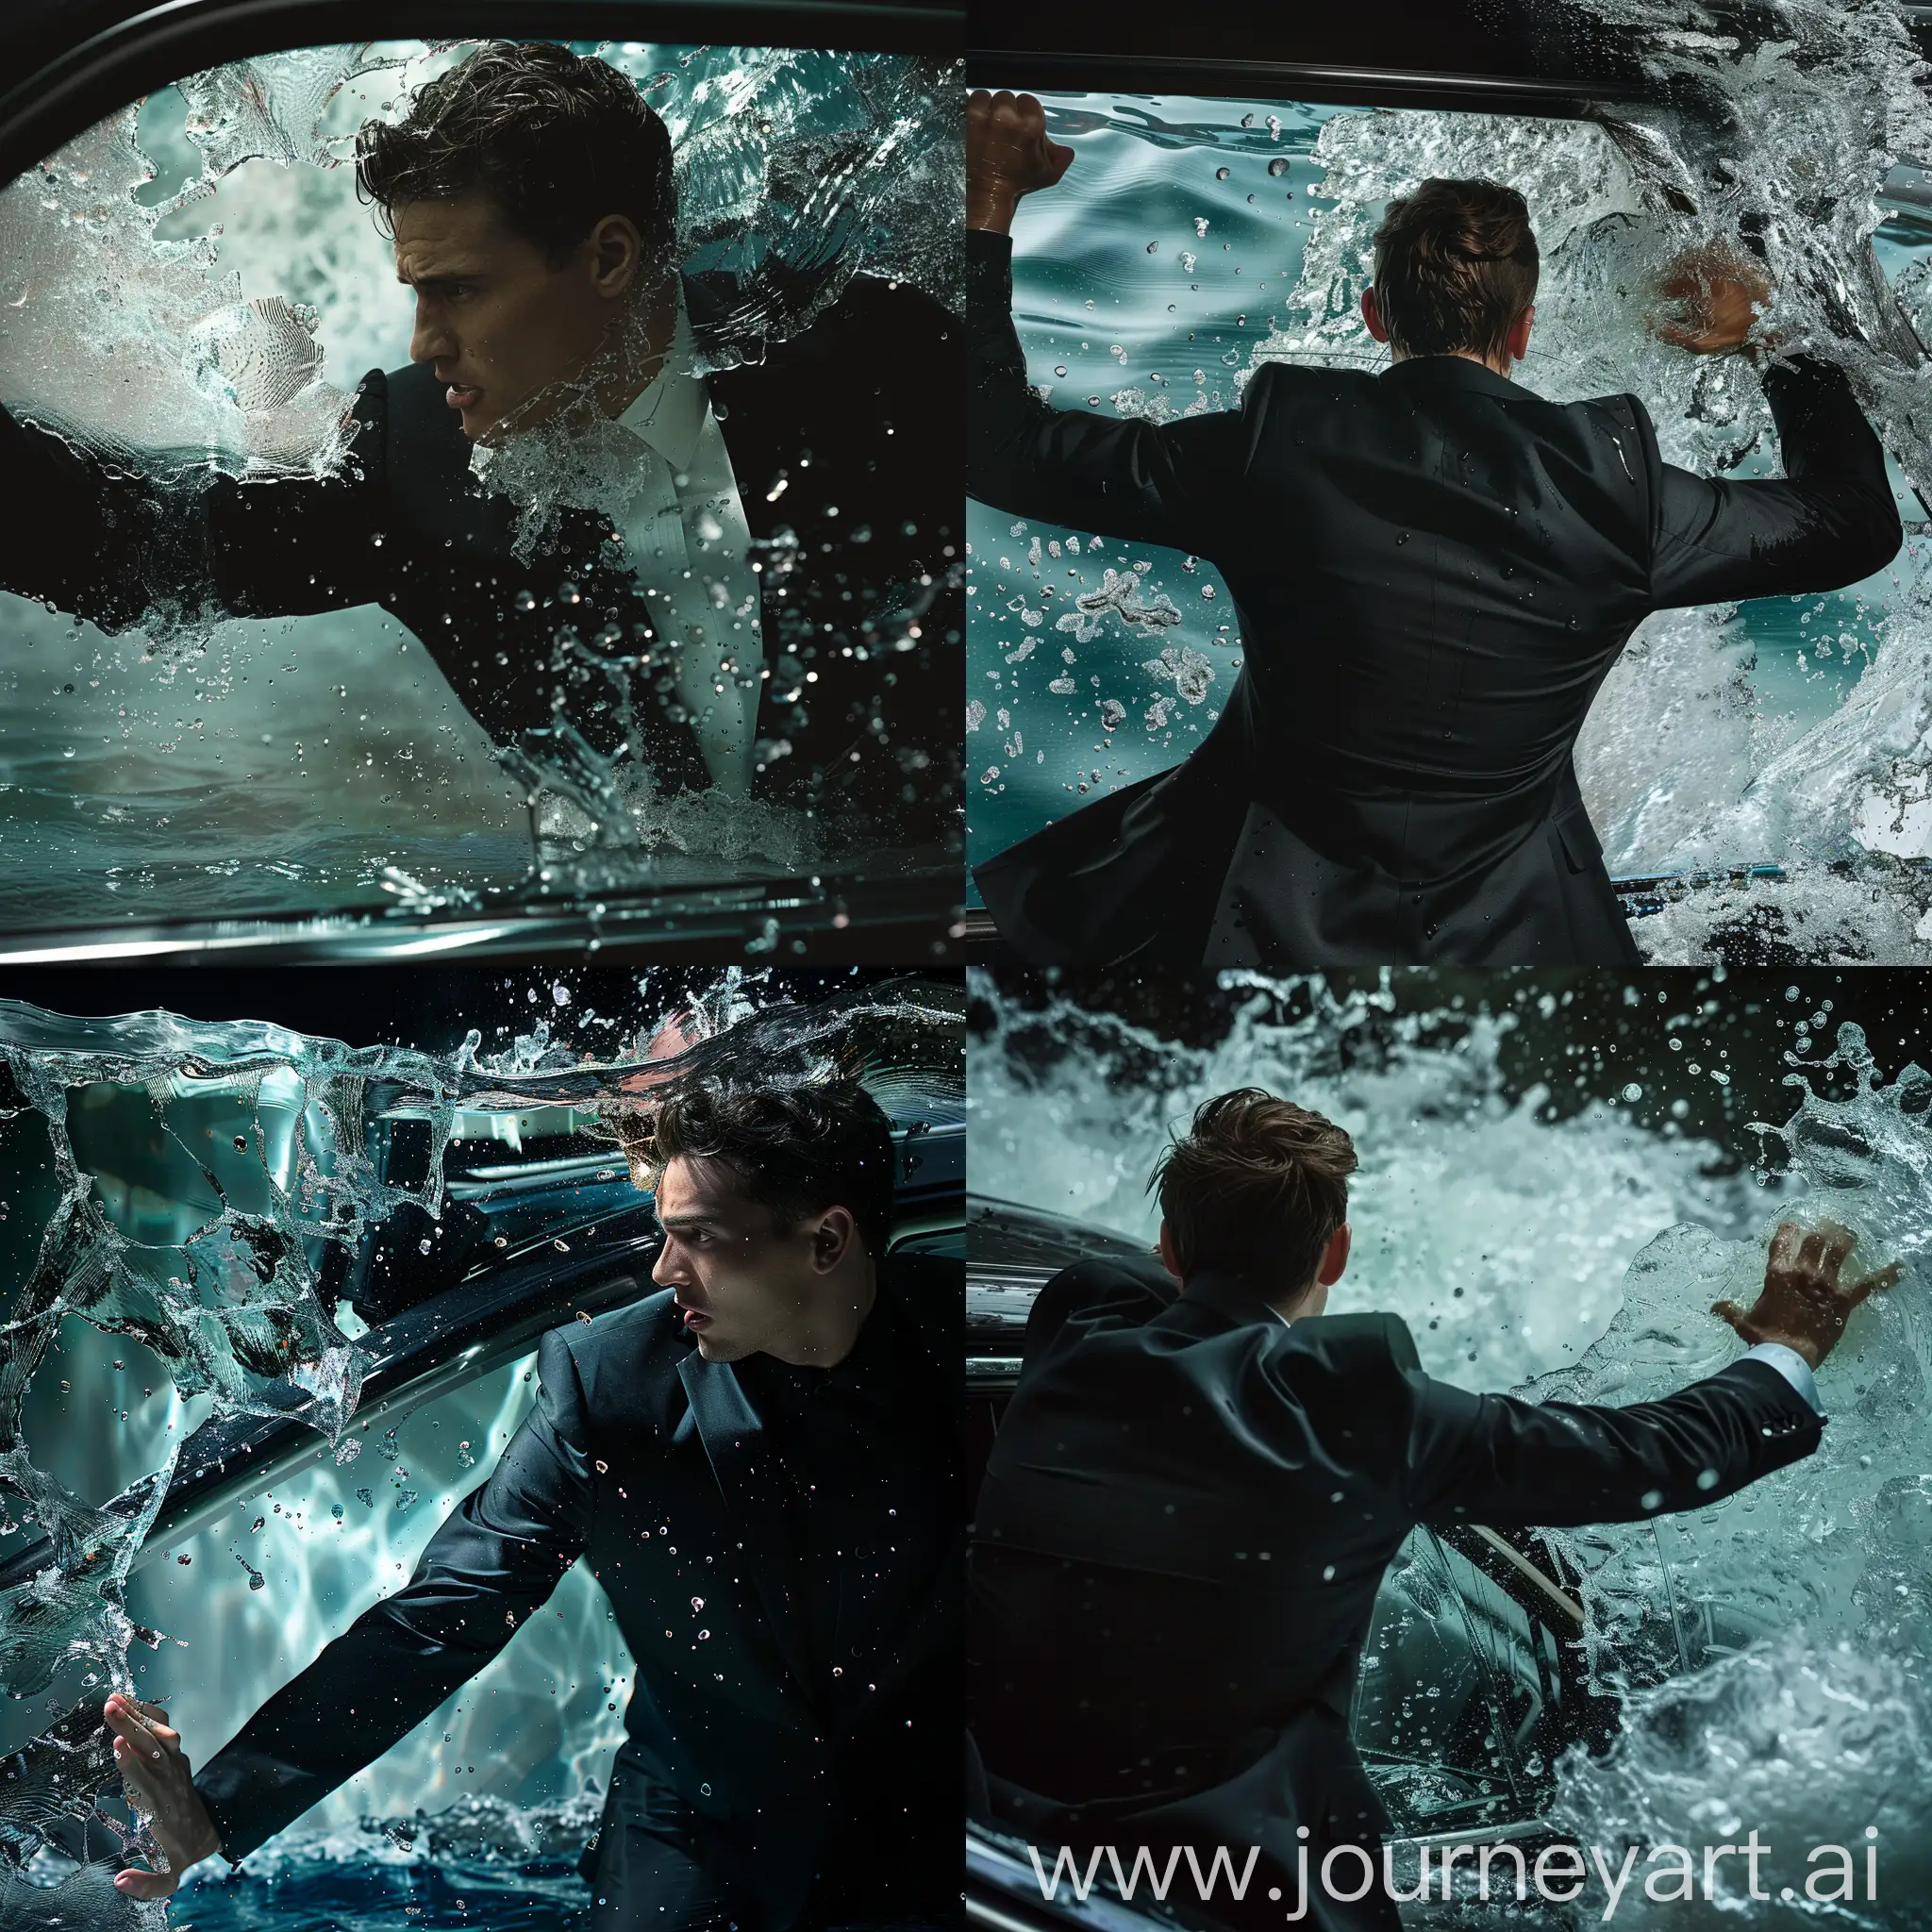 Man-in-a-Black-Suit-Breaking-a-Car-Window-Underwater